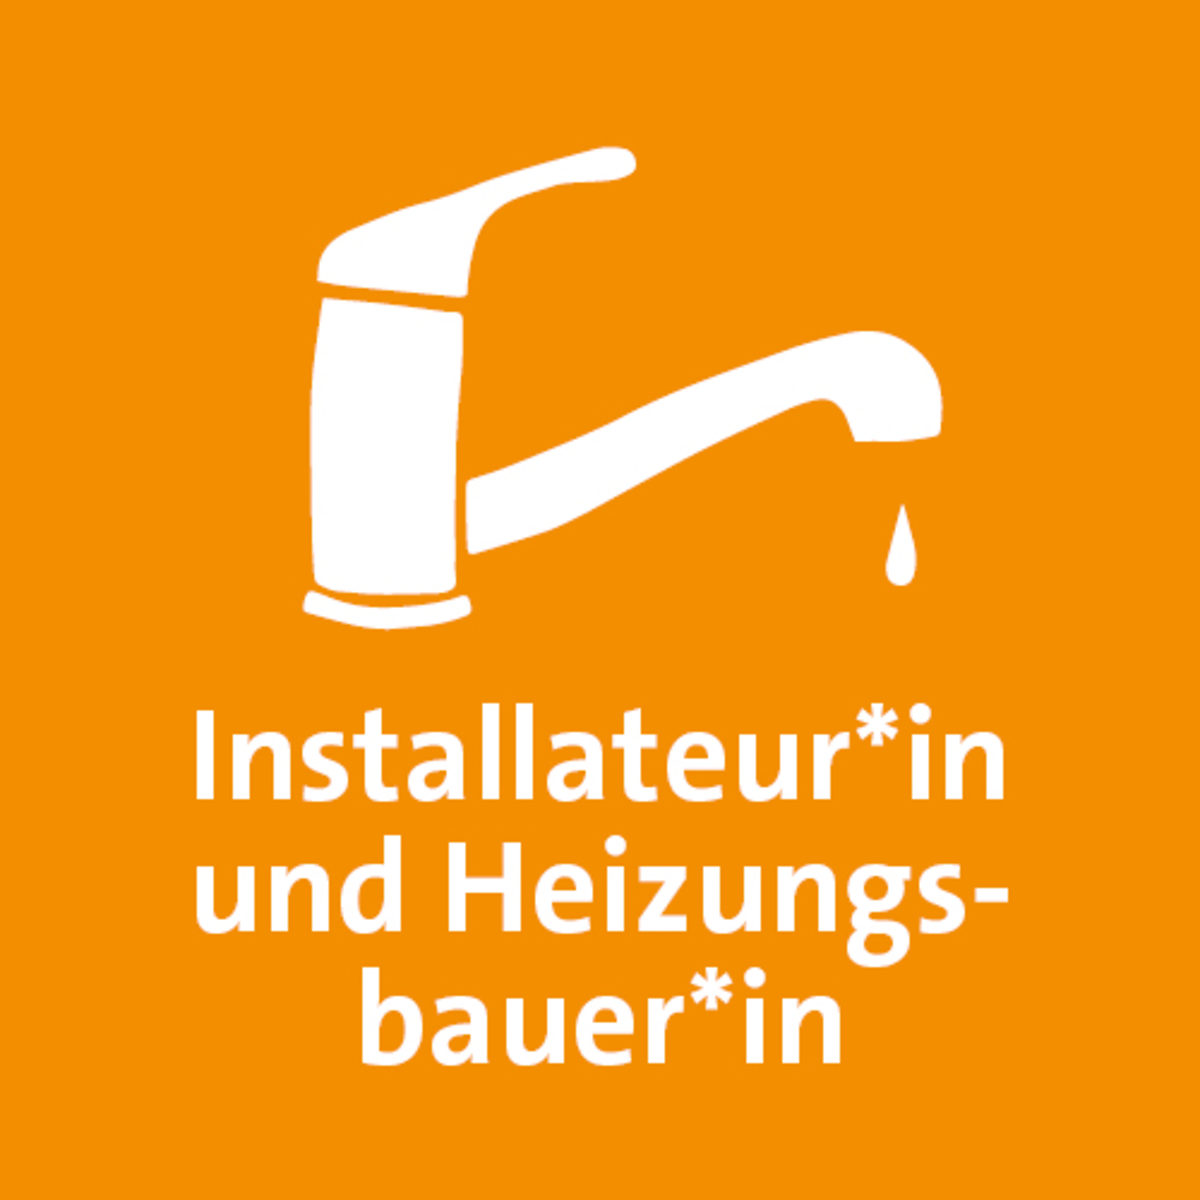 Icon "Installateur*in und Heizubungsbauer*in"